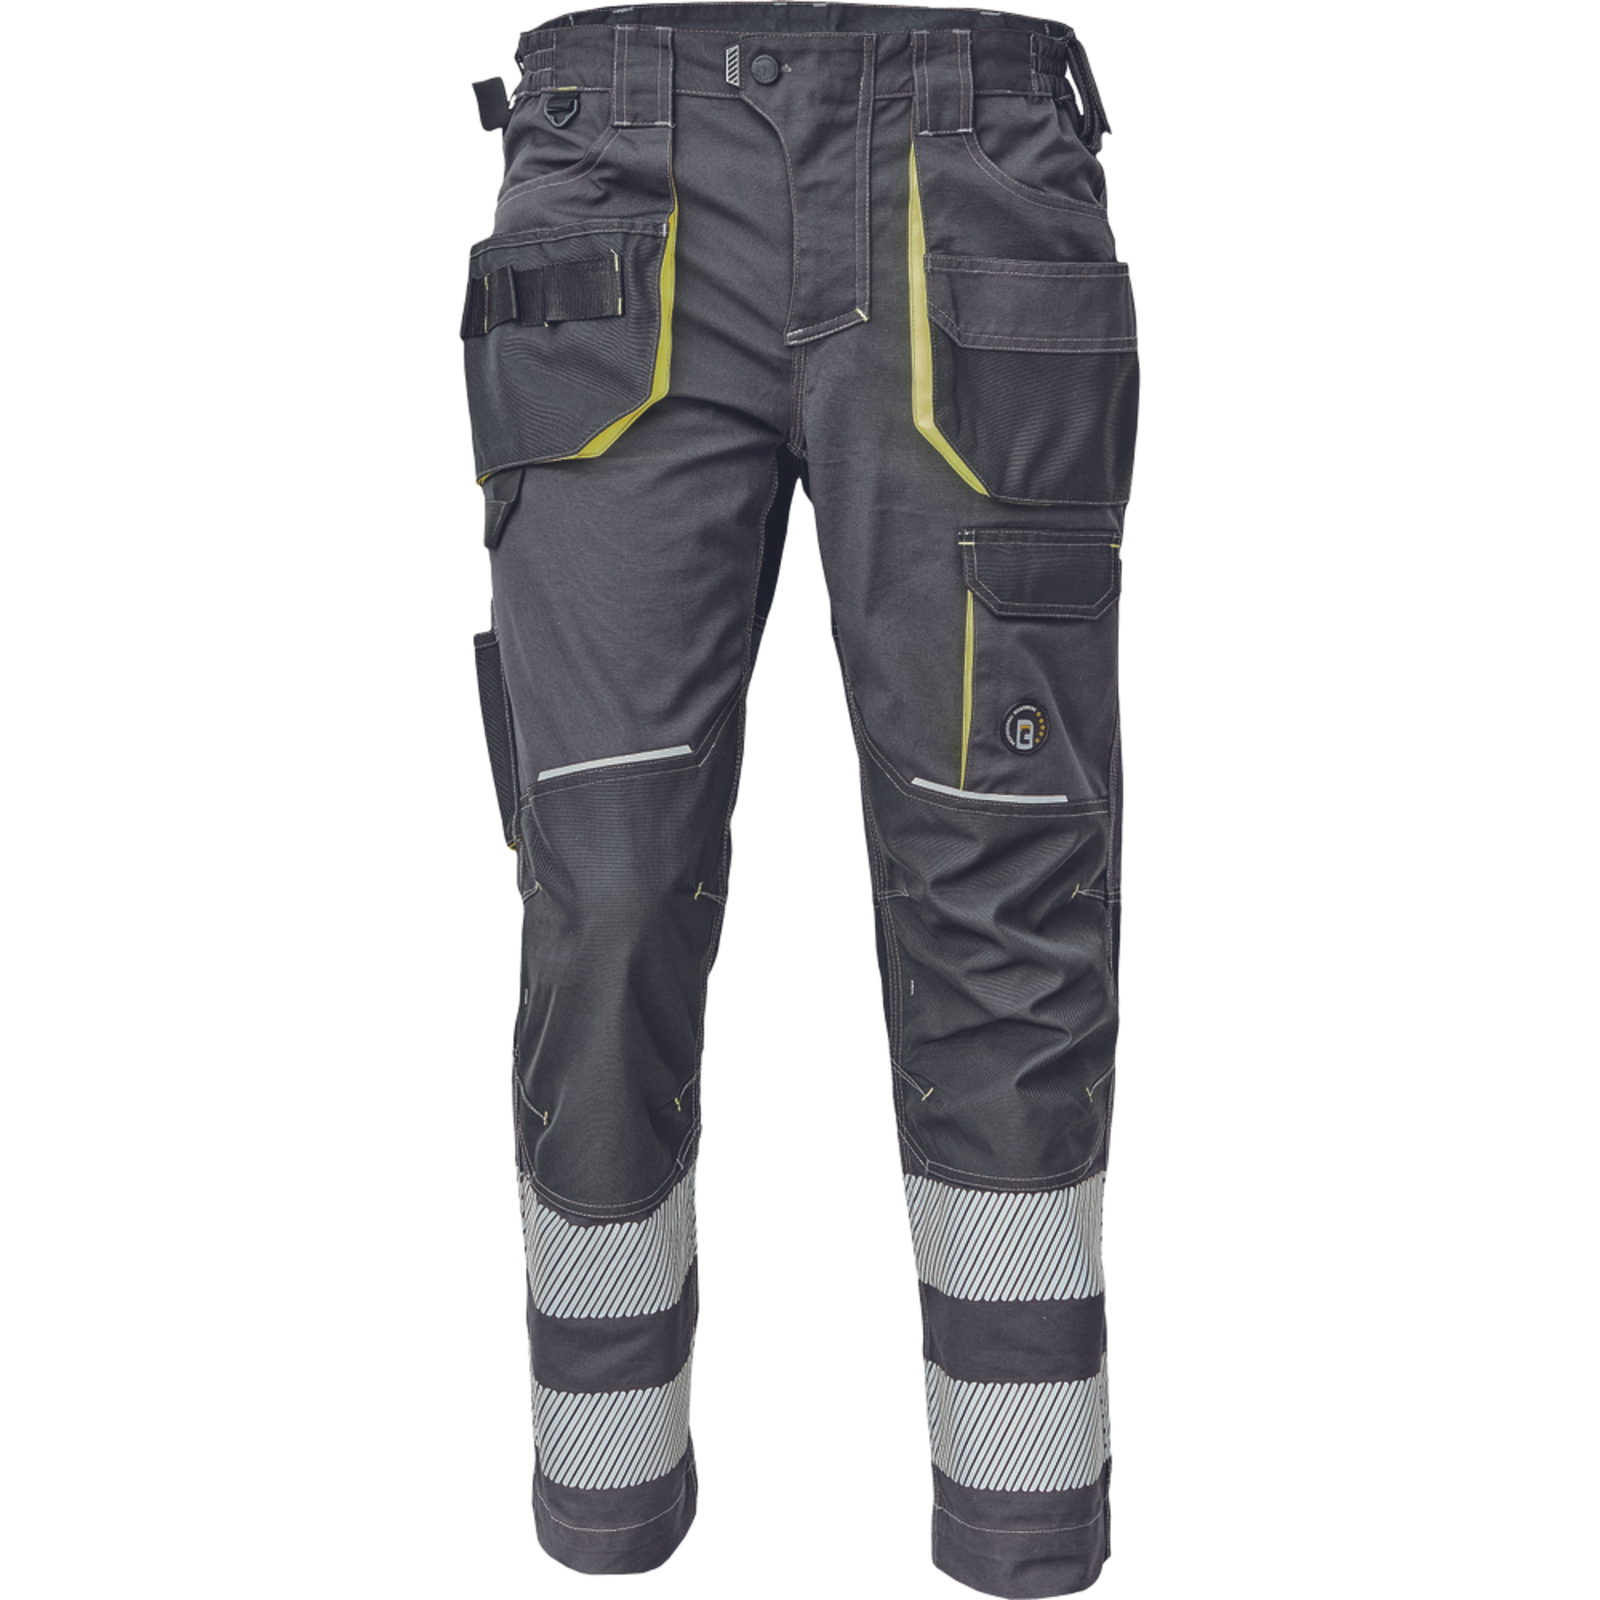 Pracovné nohavice s reflexnými pruhmi Cerva Sheldon RFLX pánske - veľkosť: 68, farba: antracit/žltá